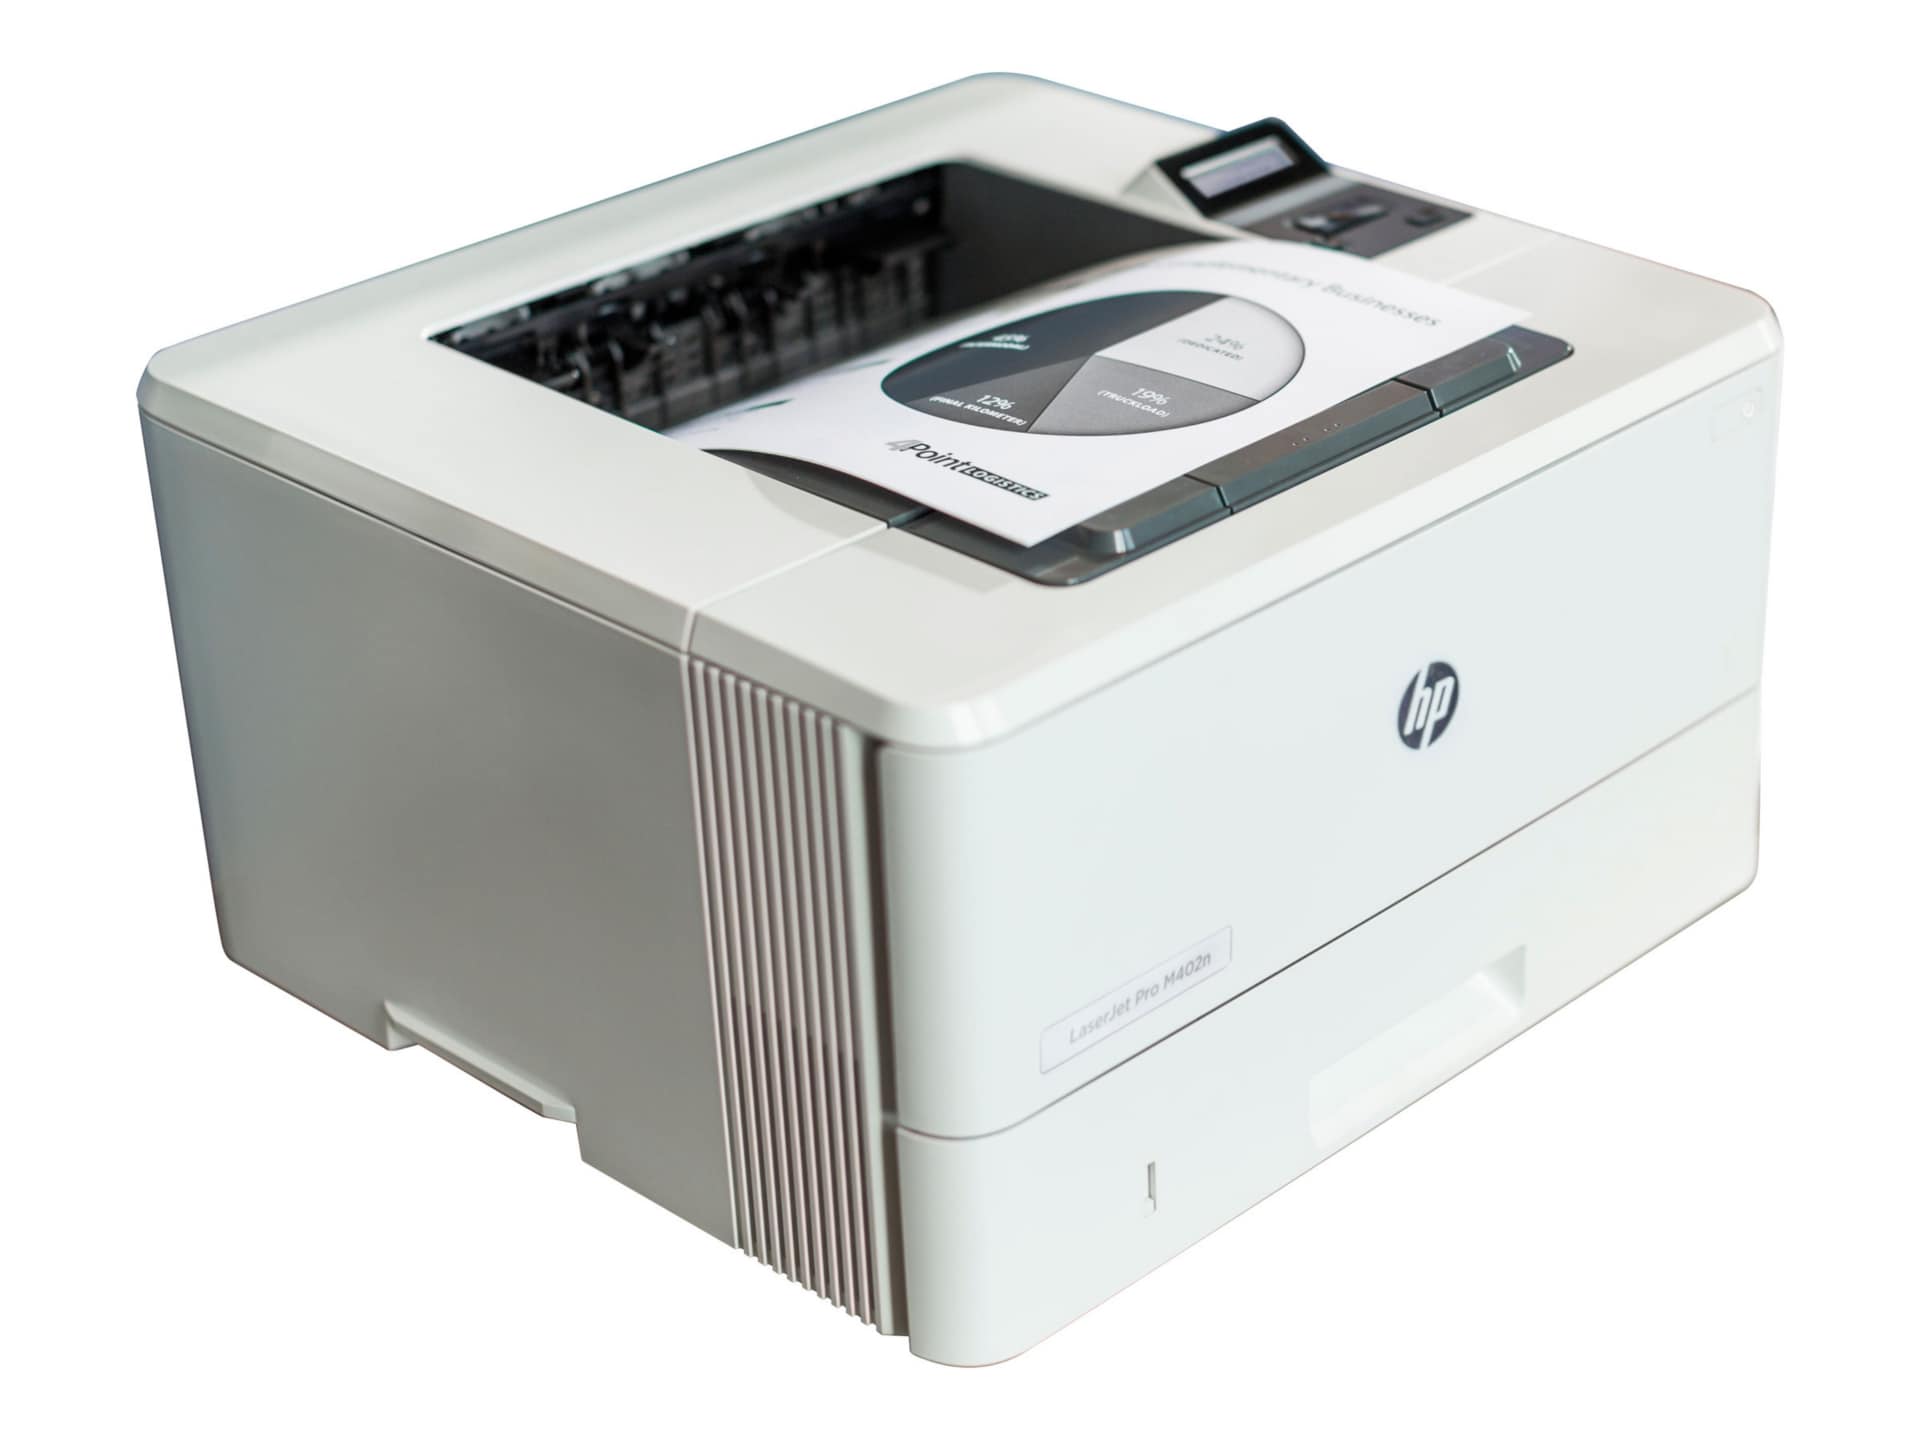 Hp laserjet pro m402n printer review